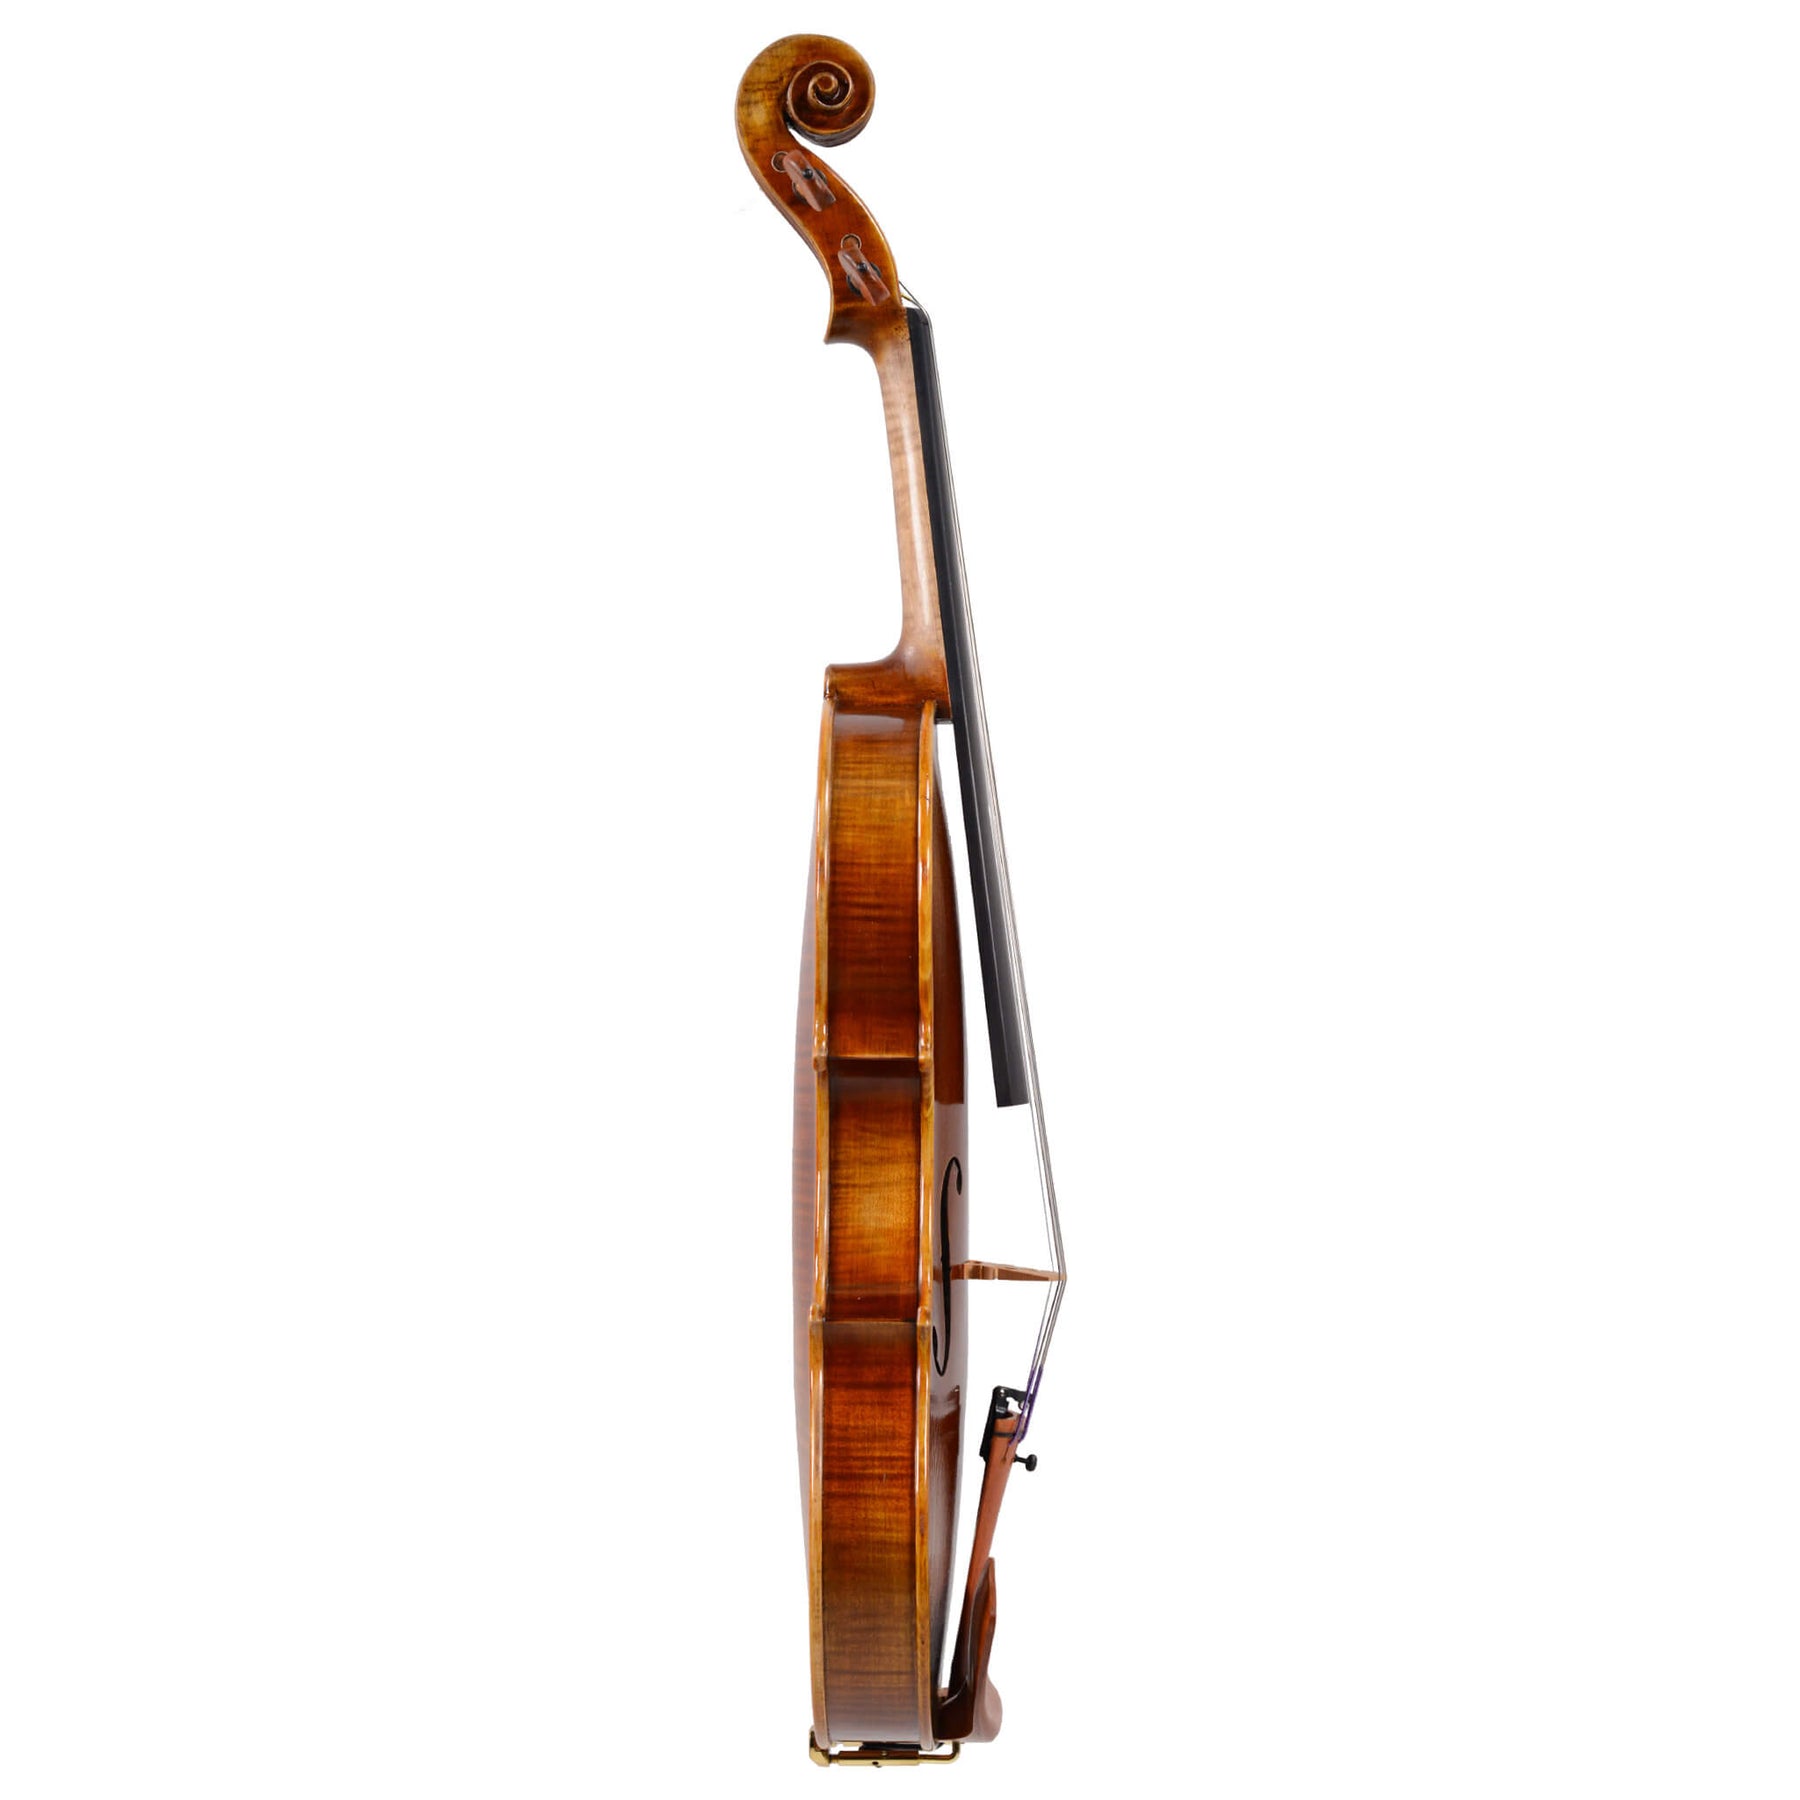 B-Stock Fiddlerman Symphony Violin Outfit